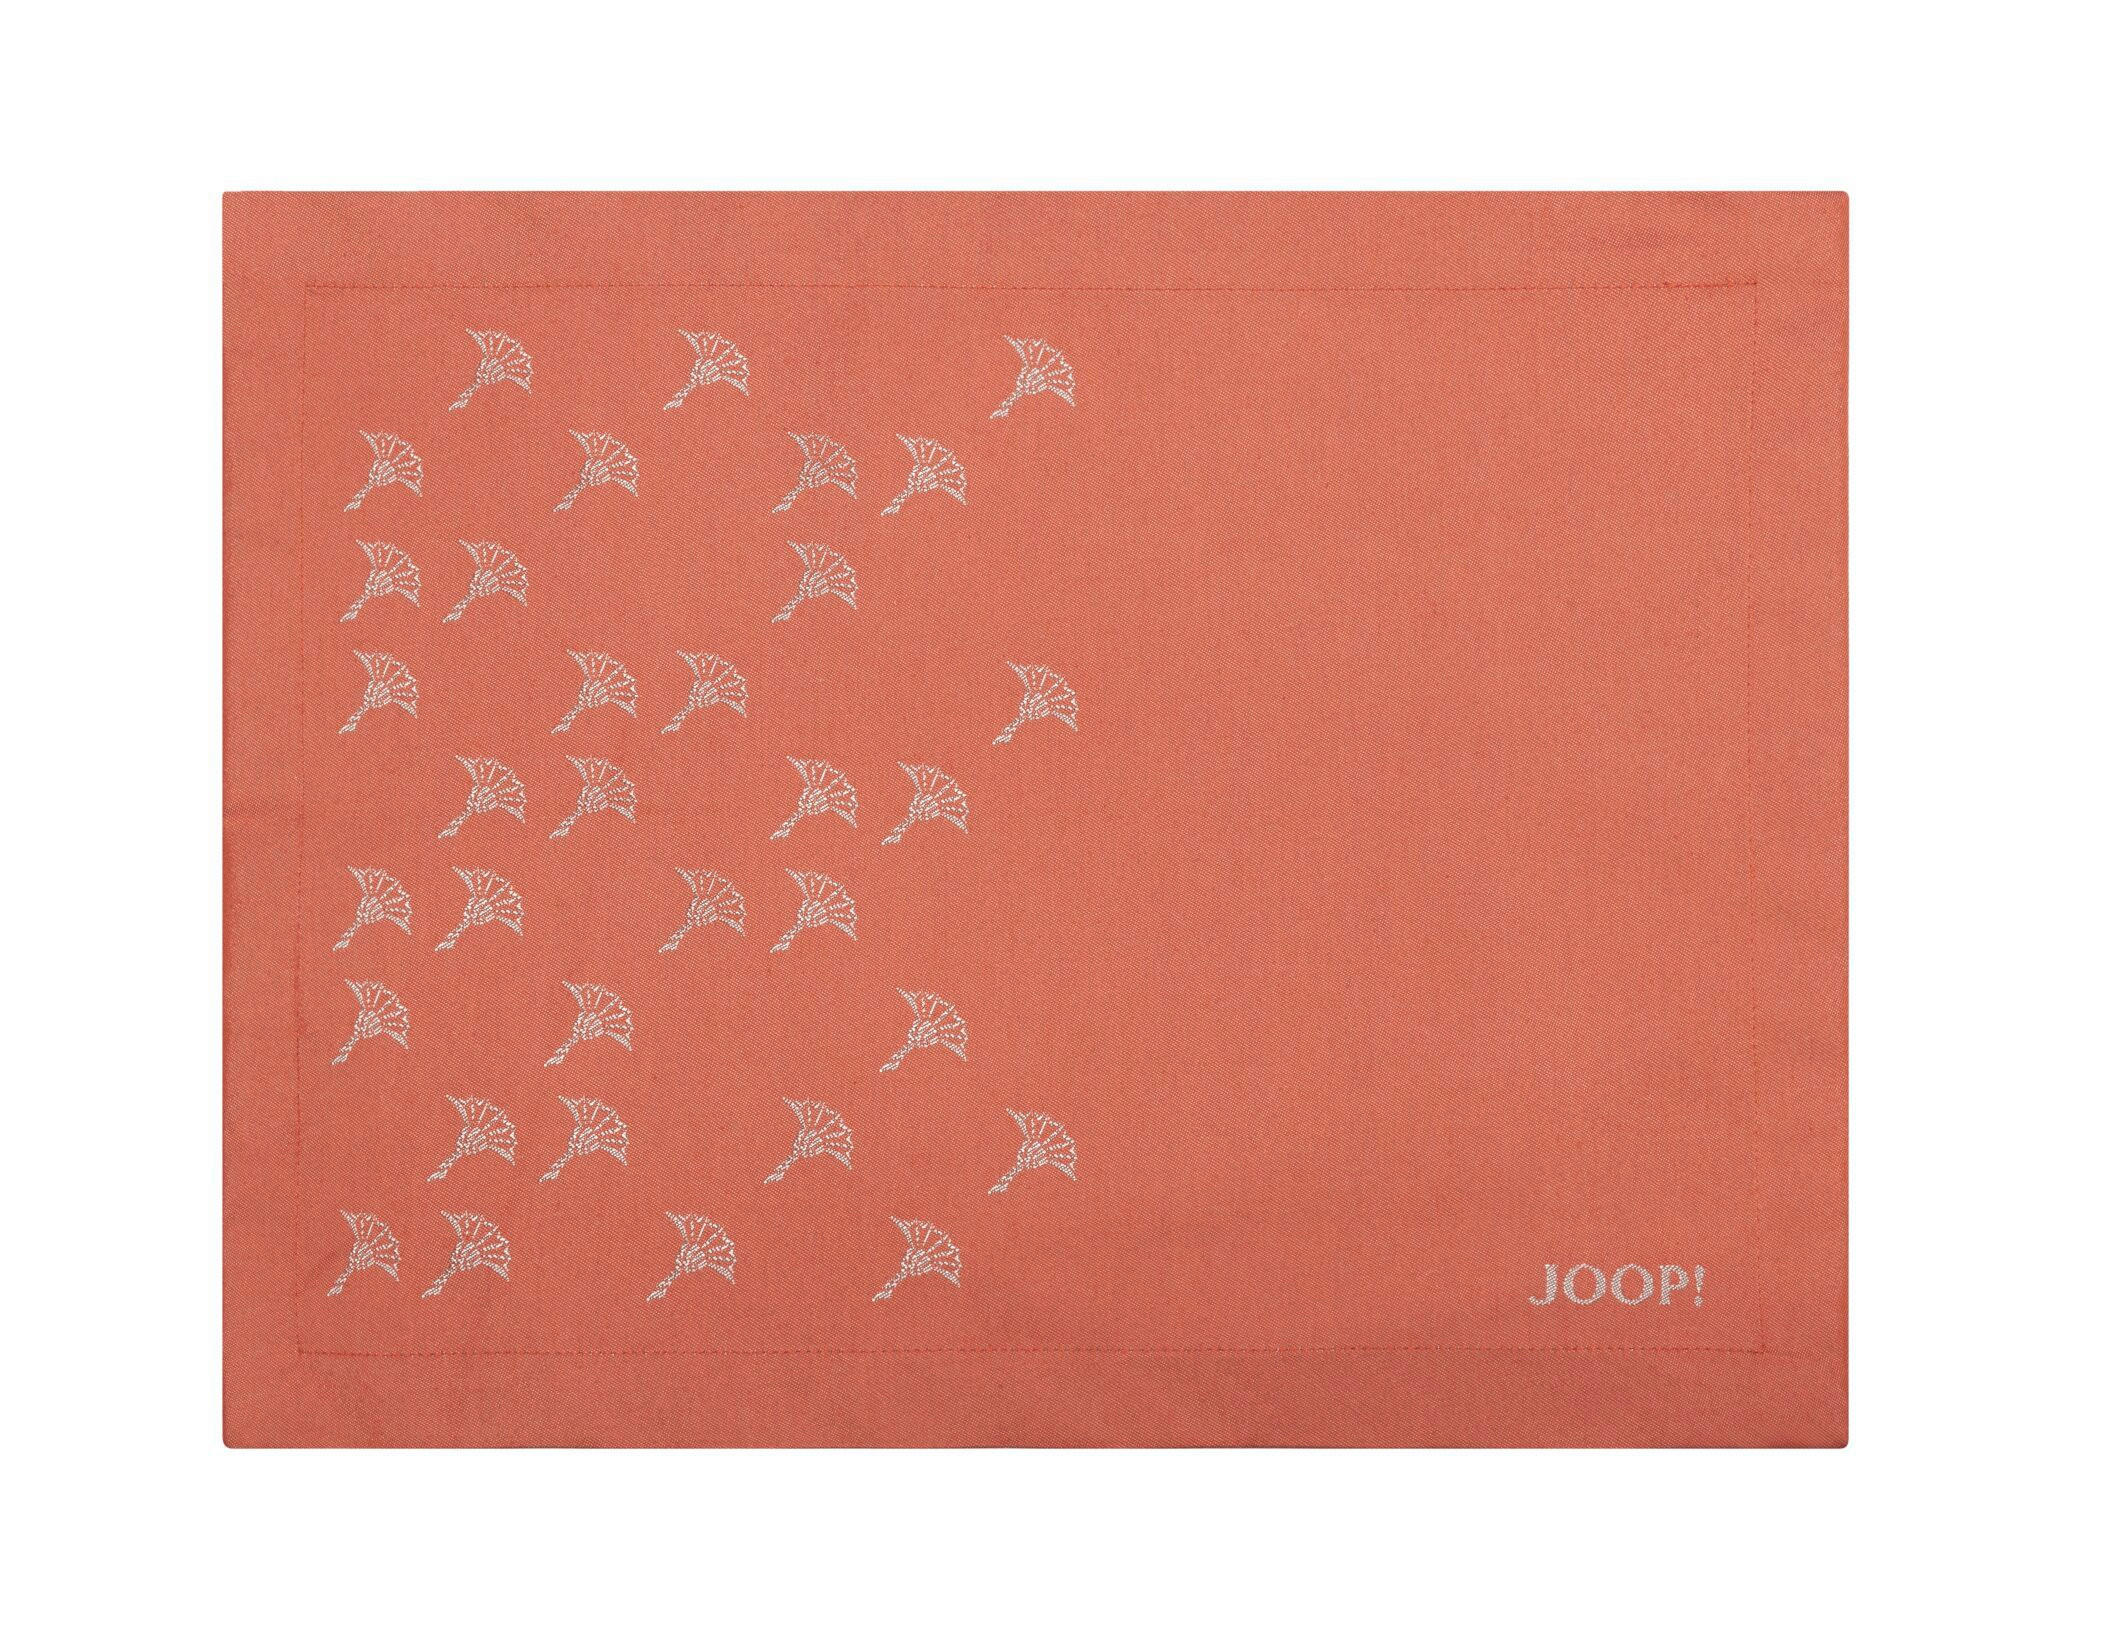 Joop! Tischset Joop! 2er Set Textil Graphitfarben 36/48 cm jetzt nur online  ➤